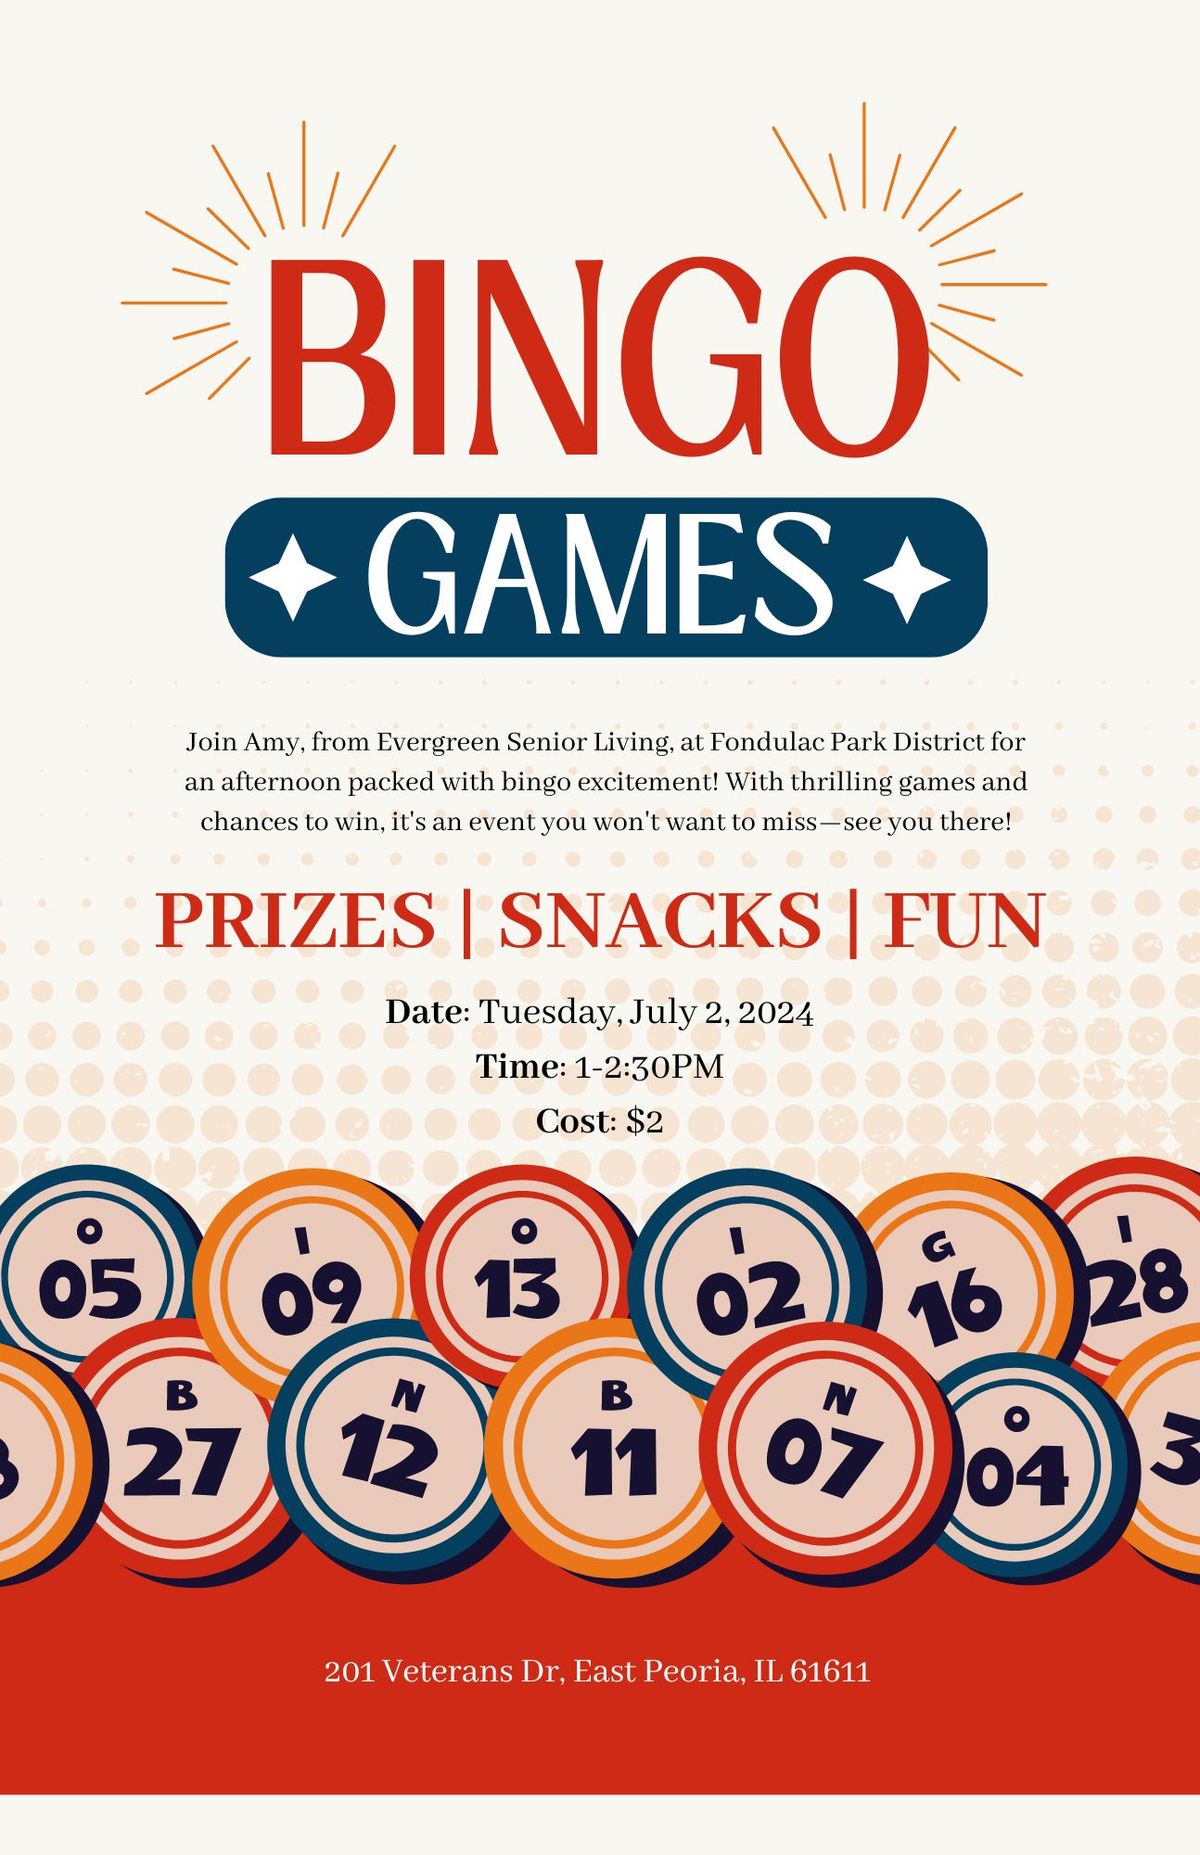 Bingo at Fondulac Park District